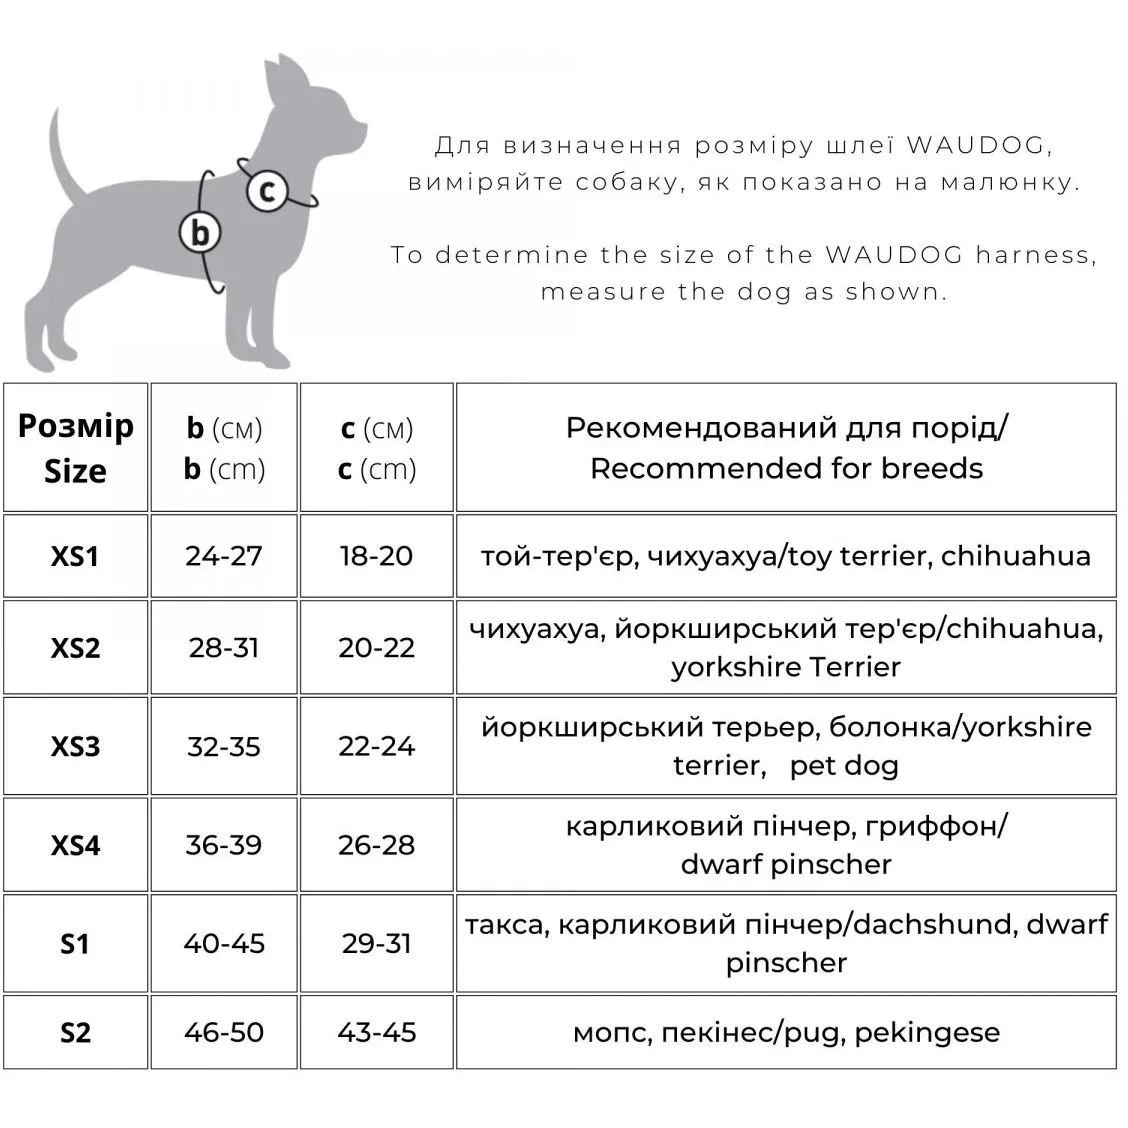 Шлея для собак мягкая Waudog Clothes Милитари, с QR паспортом, XS4, 36-39х26-28 см - фото 3